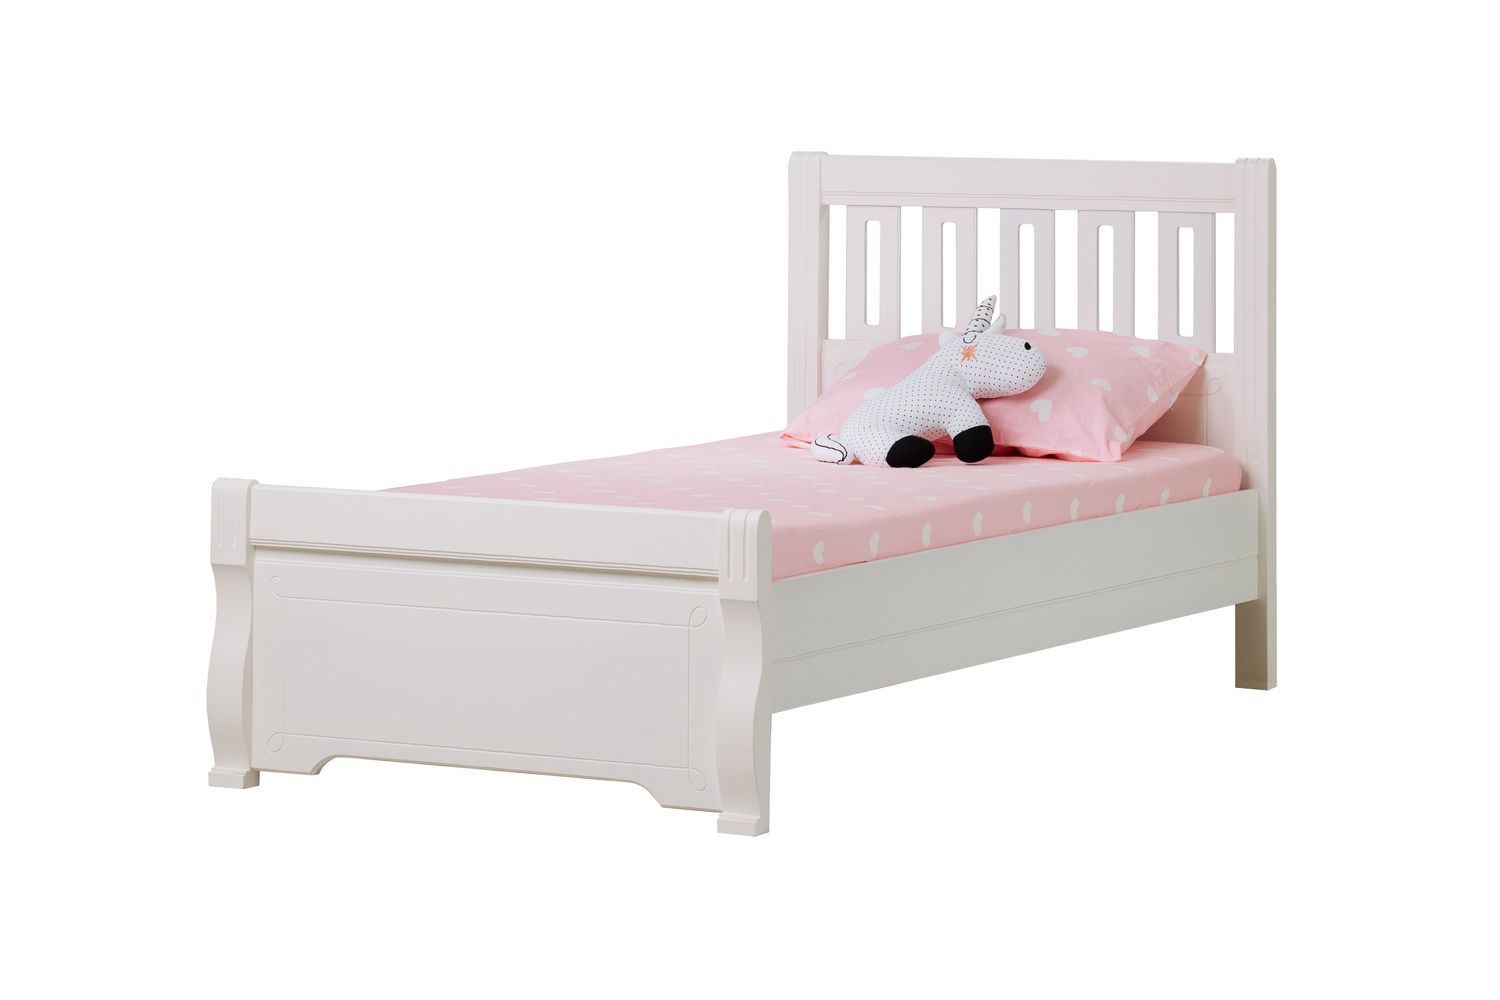   Кровать детская массив двуспальная Бетти №16 1400Х2000  